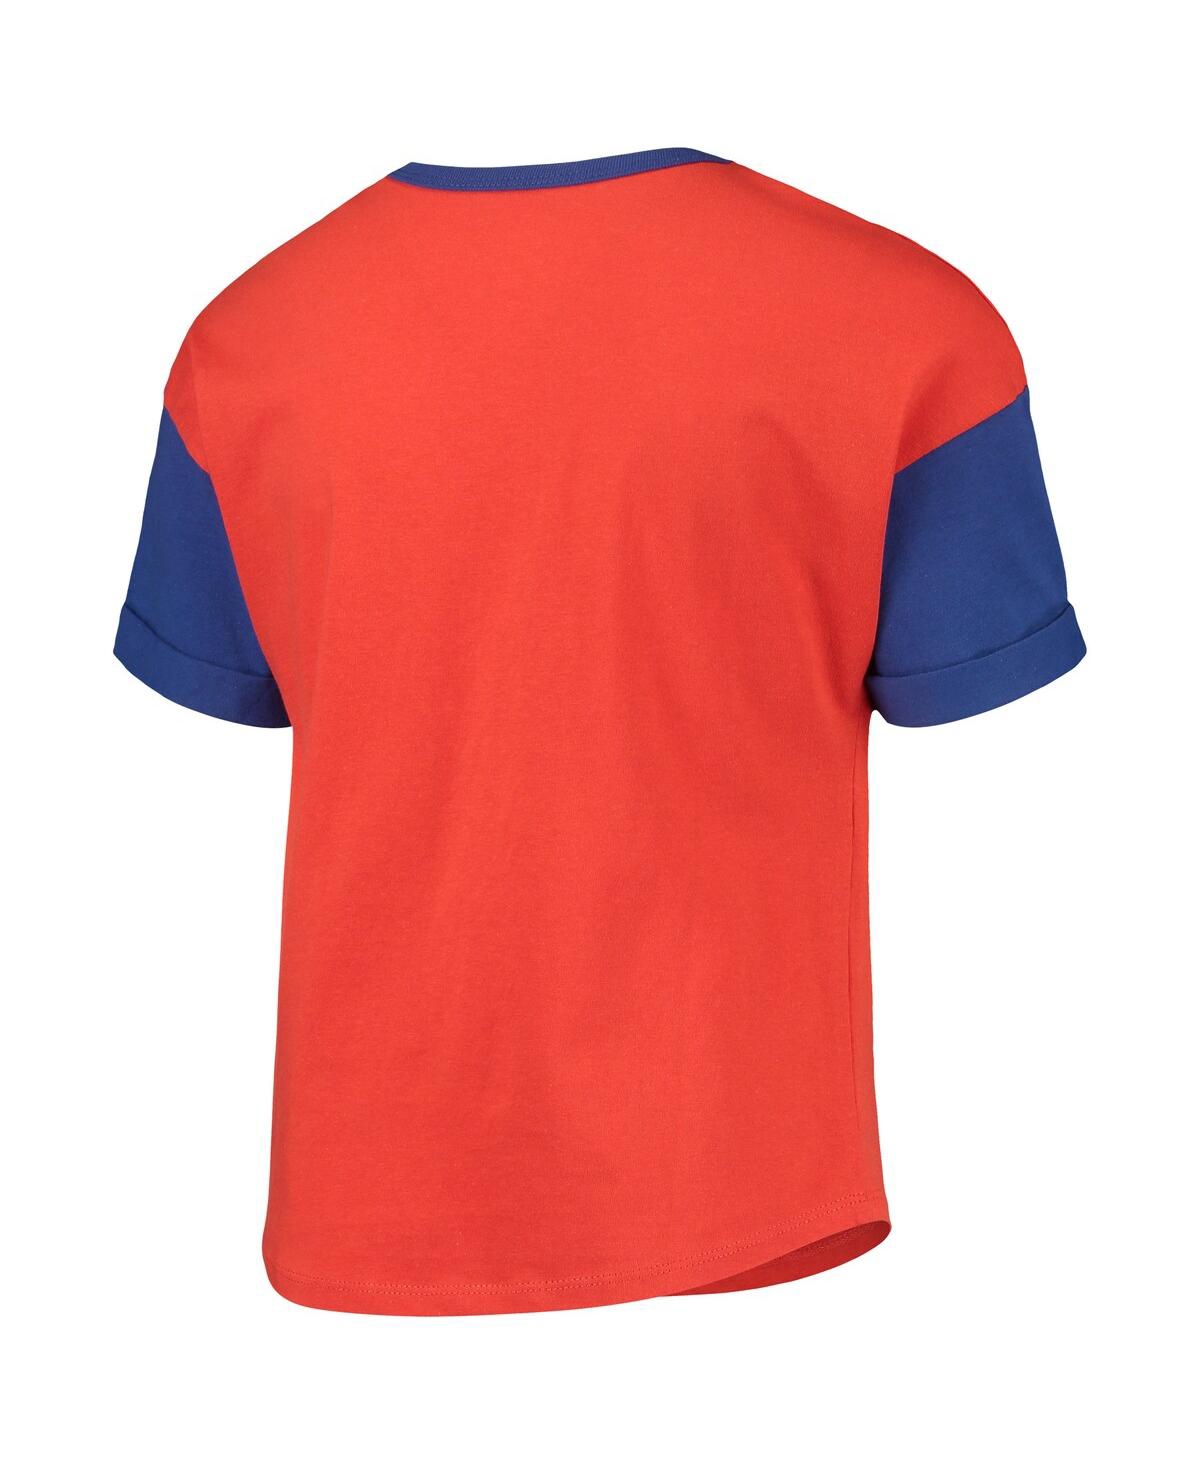 Shop Outerstuff Big Girls Orange New York Mets Bleachers T-shirt